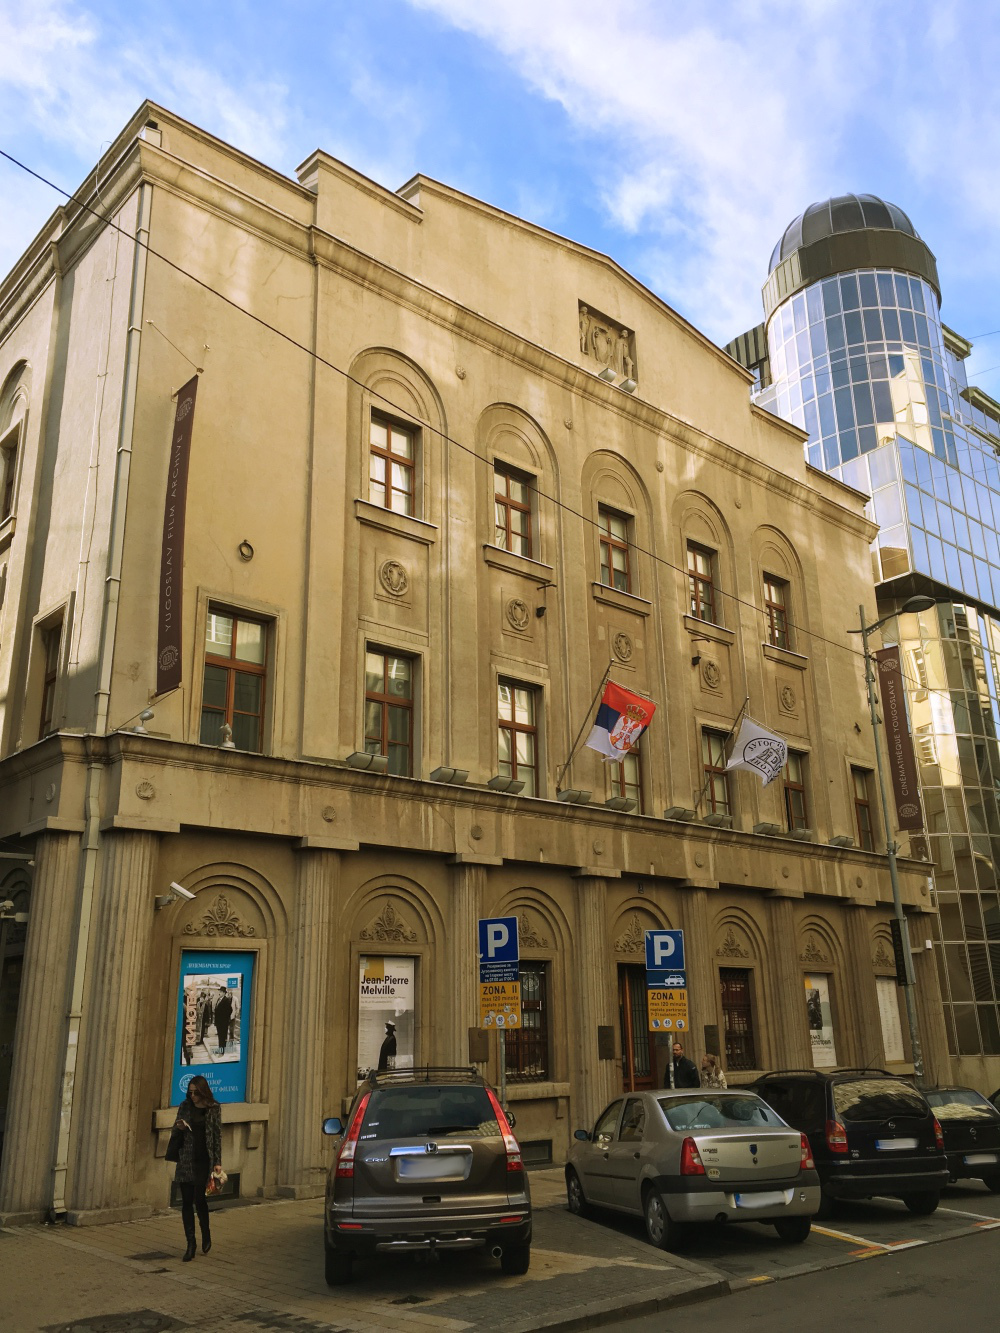 Kinoteka / Old Town Hall